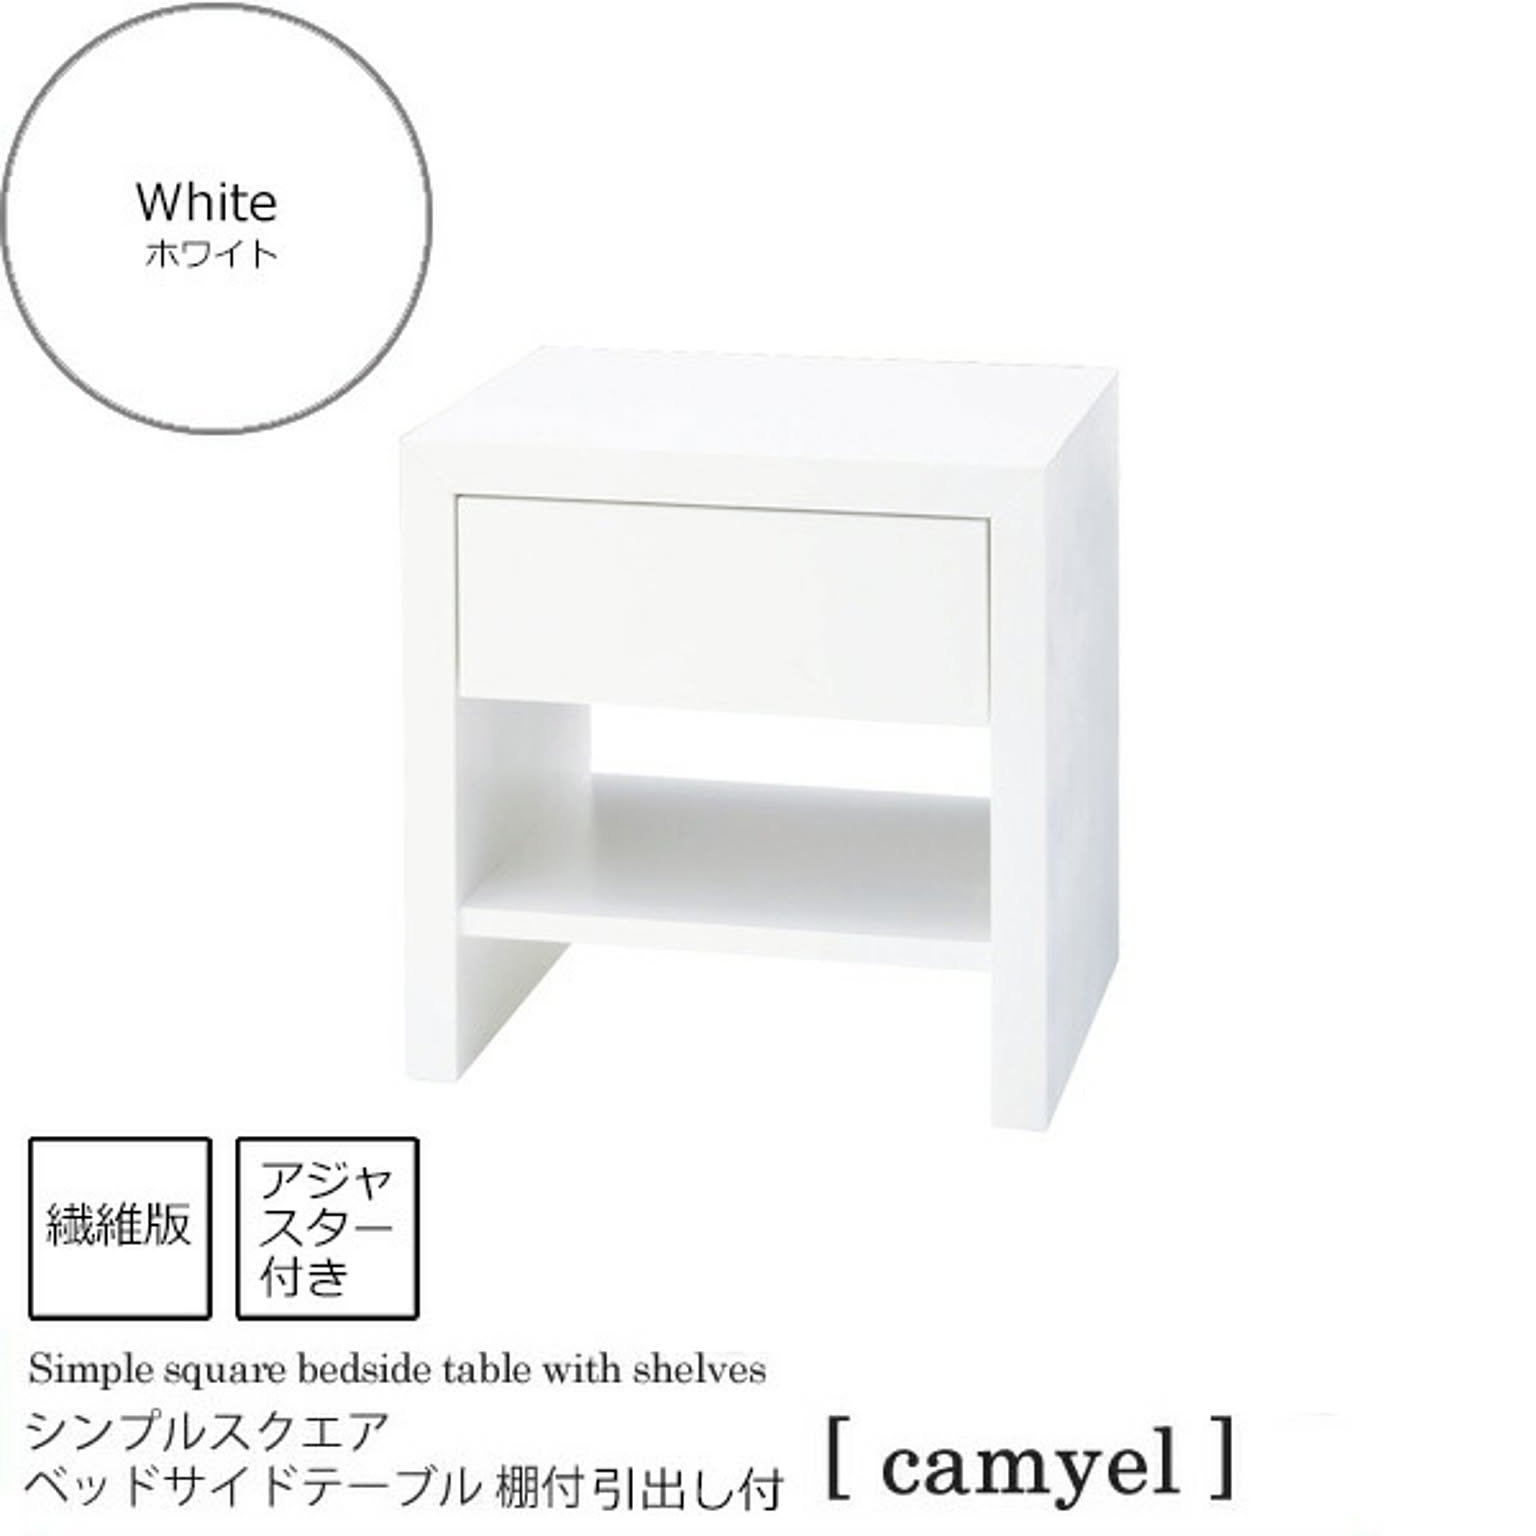 ホワイト ： シンプルスクエア ベッドサイドテーブル 棚引き出し付【camyel】 ホワイト(white) ナイトテーブル 寝室 フリーラック 棚 ベッドテーブル カジュアル 